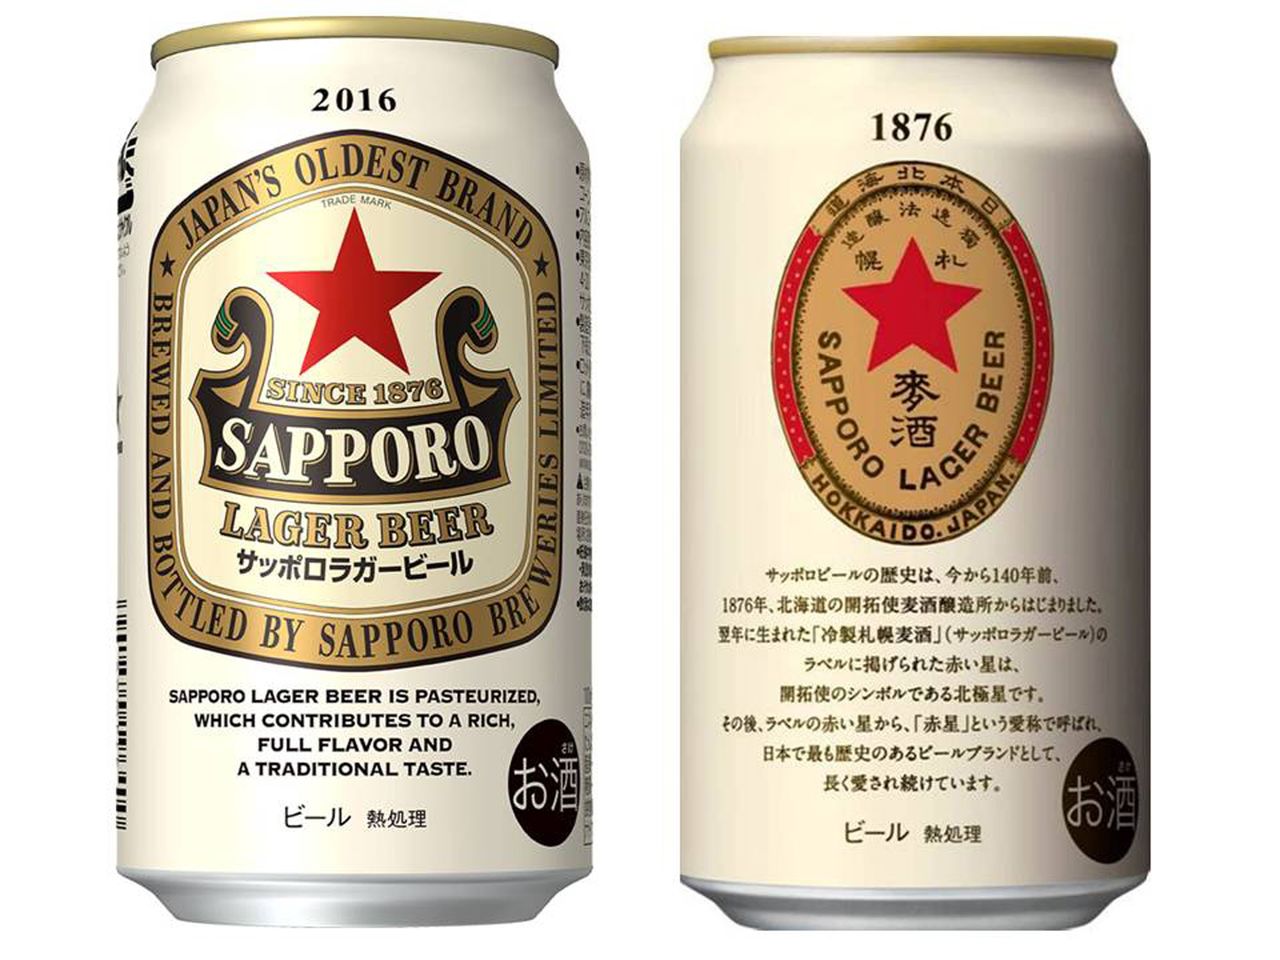 Ces versions en édition limitée de cannettes de bière arborent elles aussi une étoile rouge. (© Jiji)